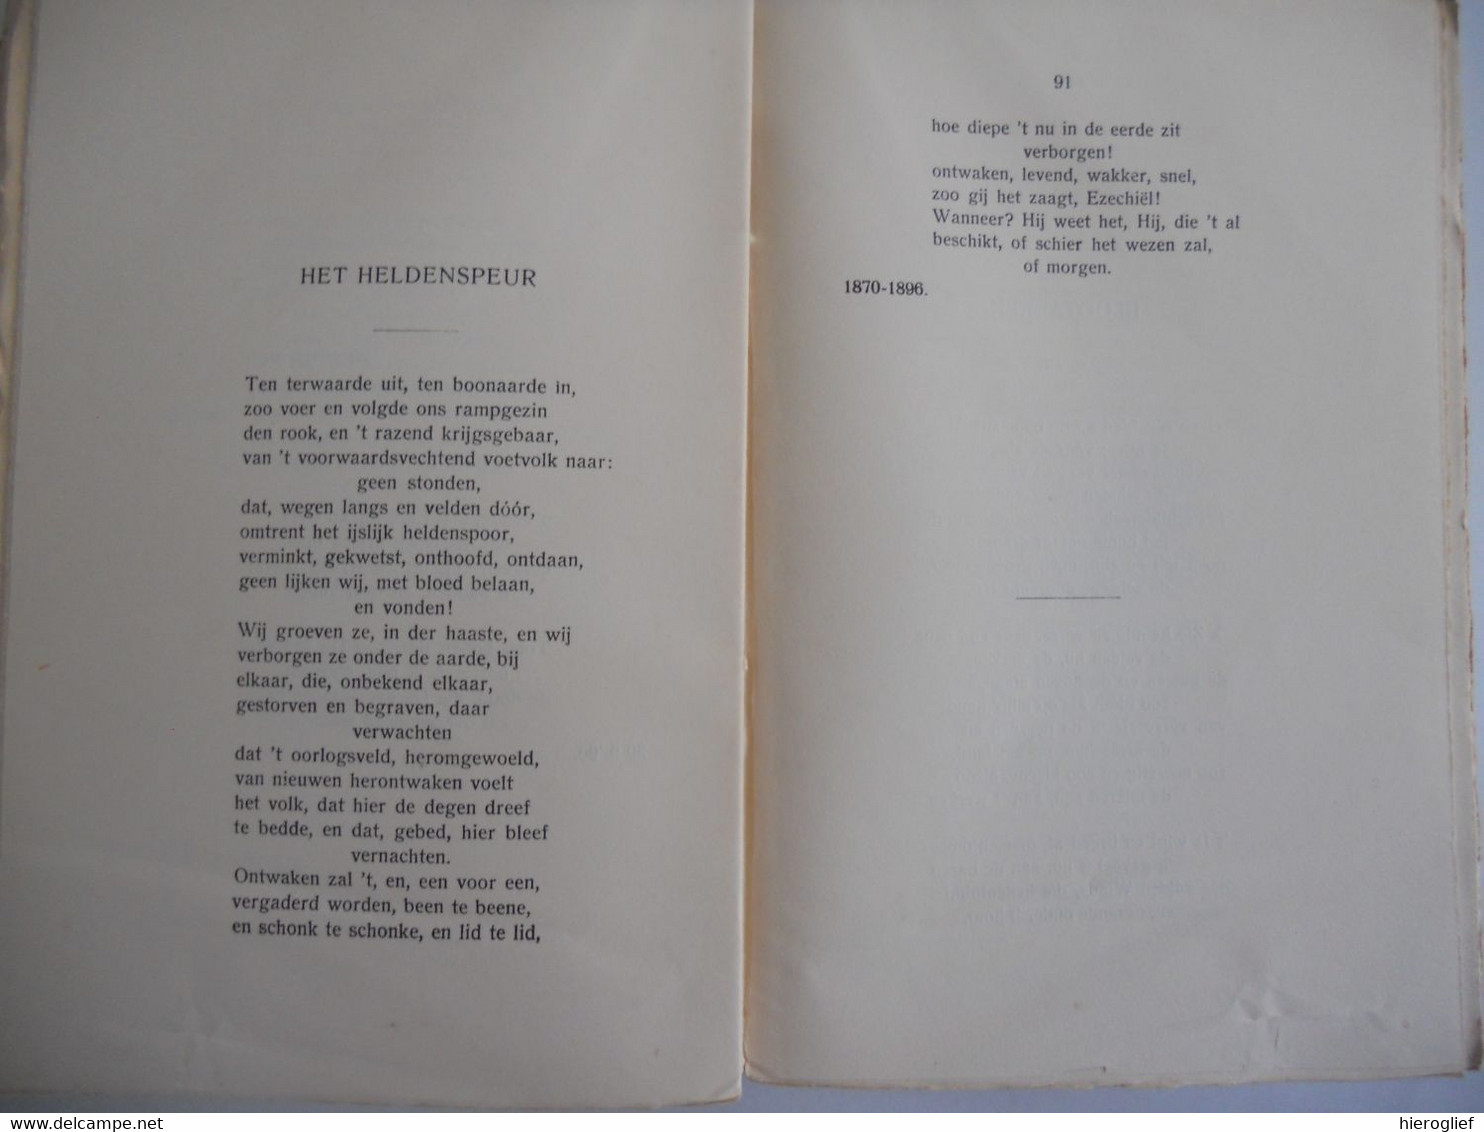 GUIDO GEZELLE 's DICHTWERKEN - RIJMSNOER - 2 delen 1930 brugge roeselare kortrijk